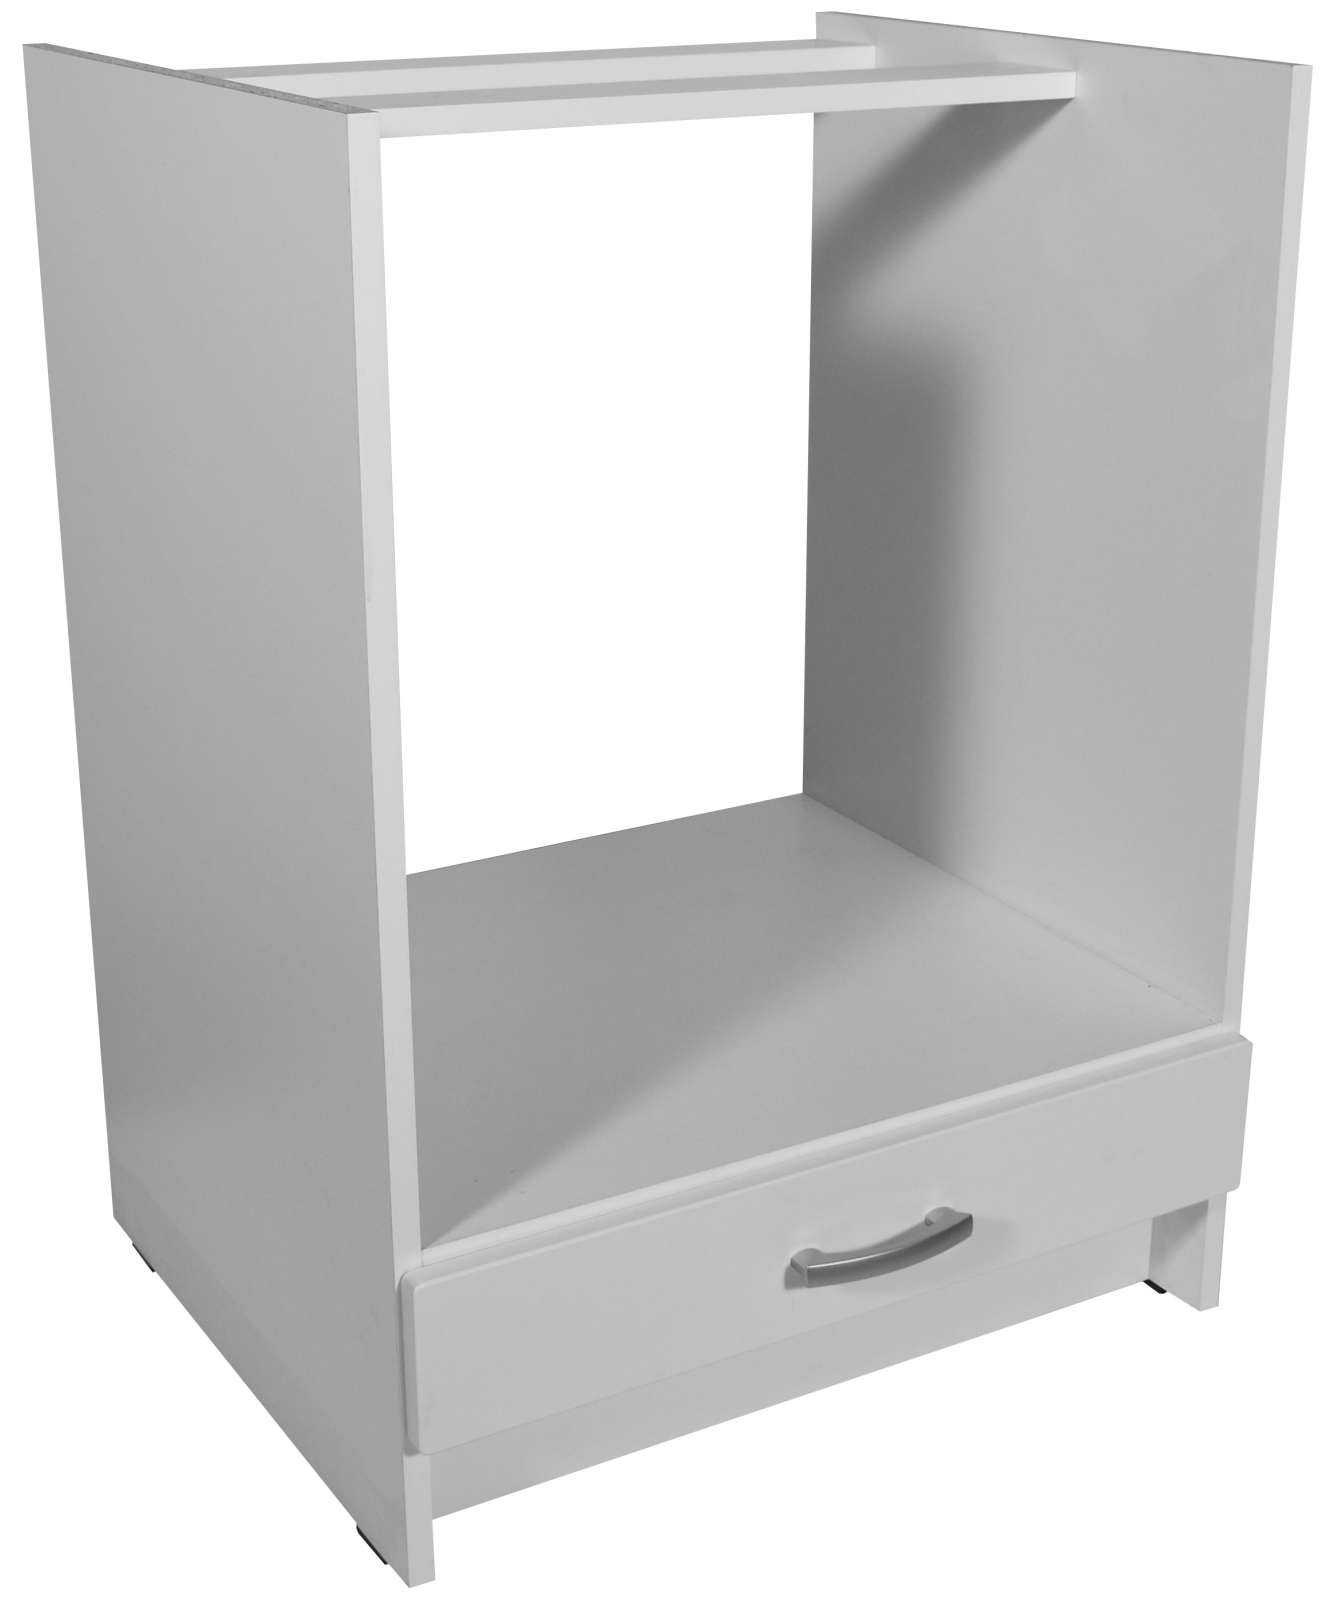 Kuchyňská skříňka pro vestavnou troubu bílá 60 cm